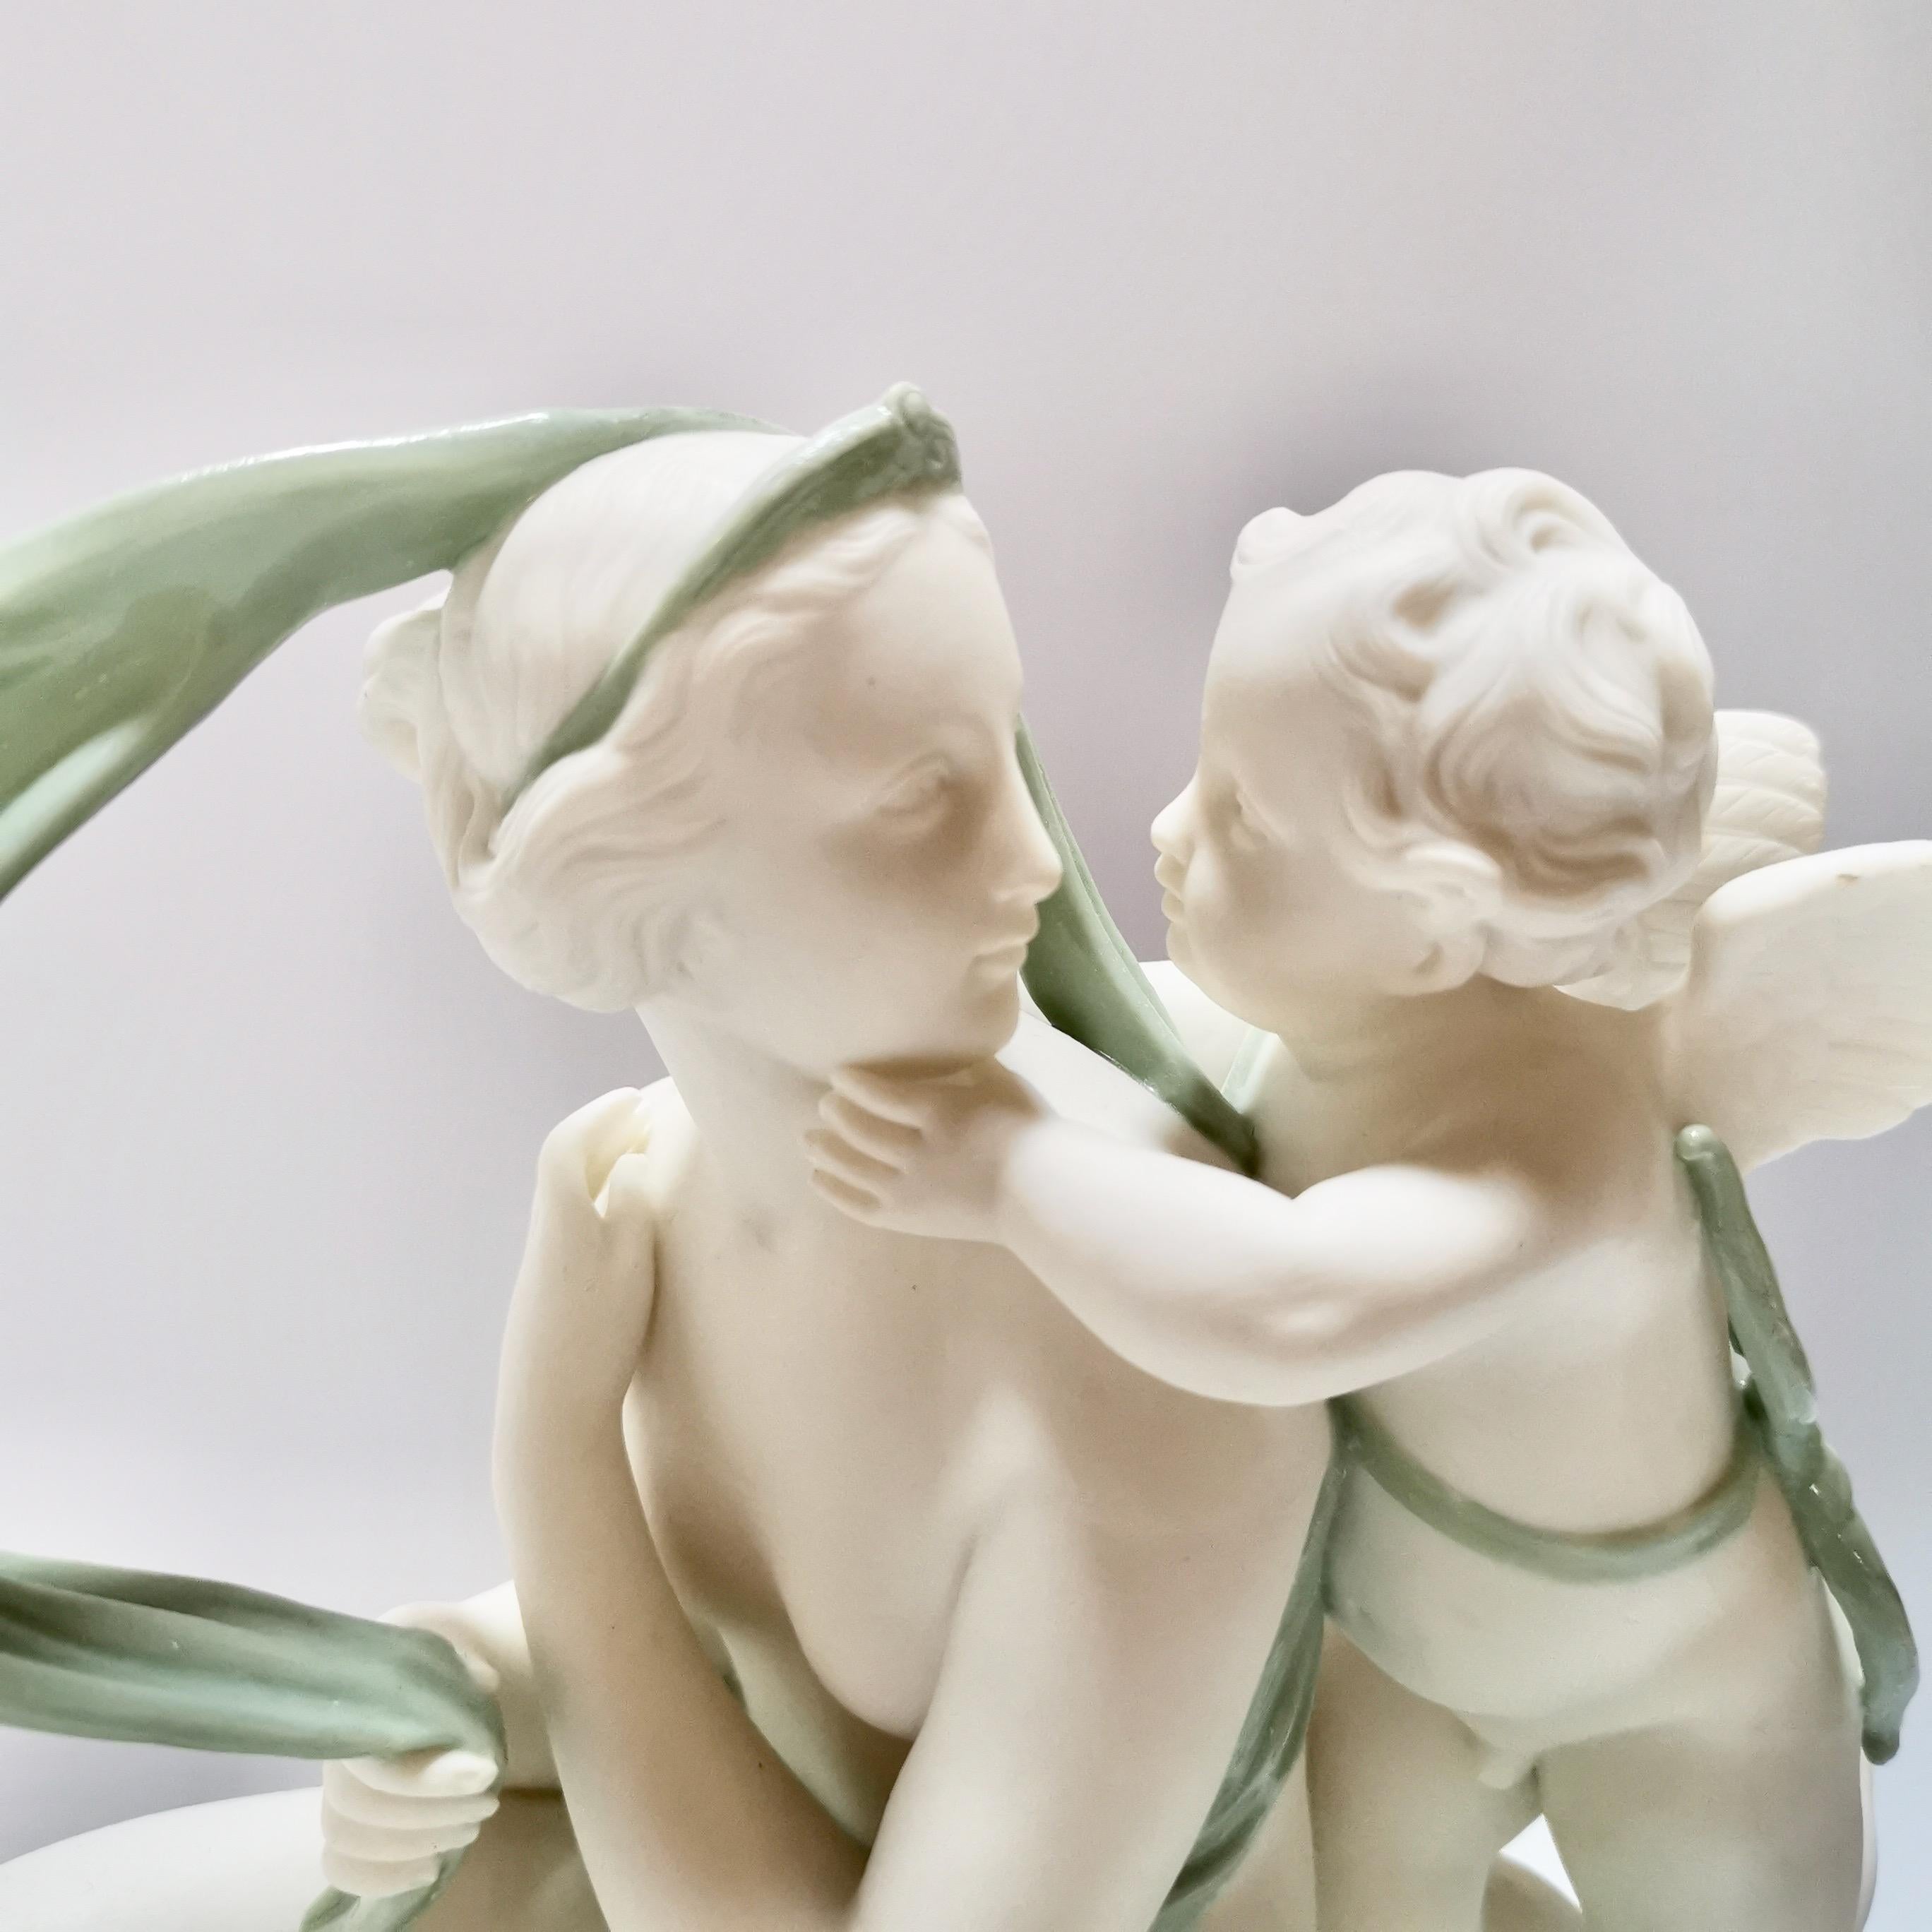 English Minton Celadon Parian Porcelain Sculpture, Venus and Cupid, Victorian, 1861 For Sale